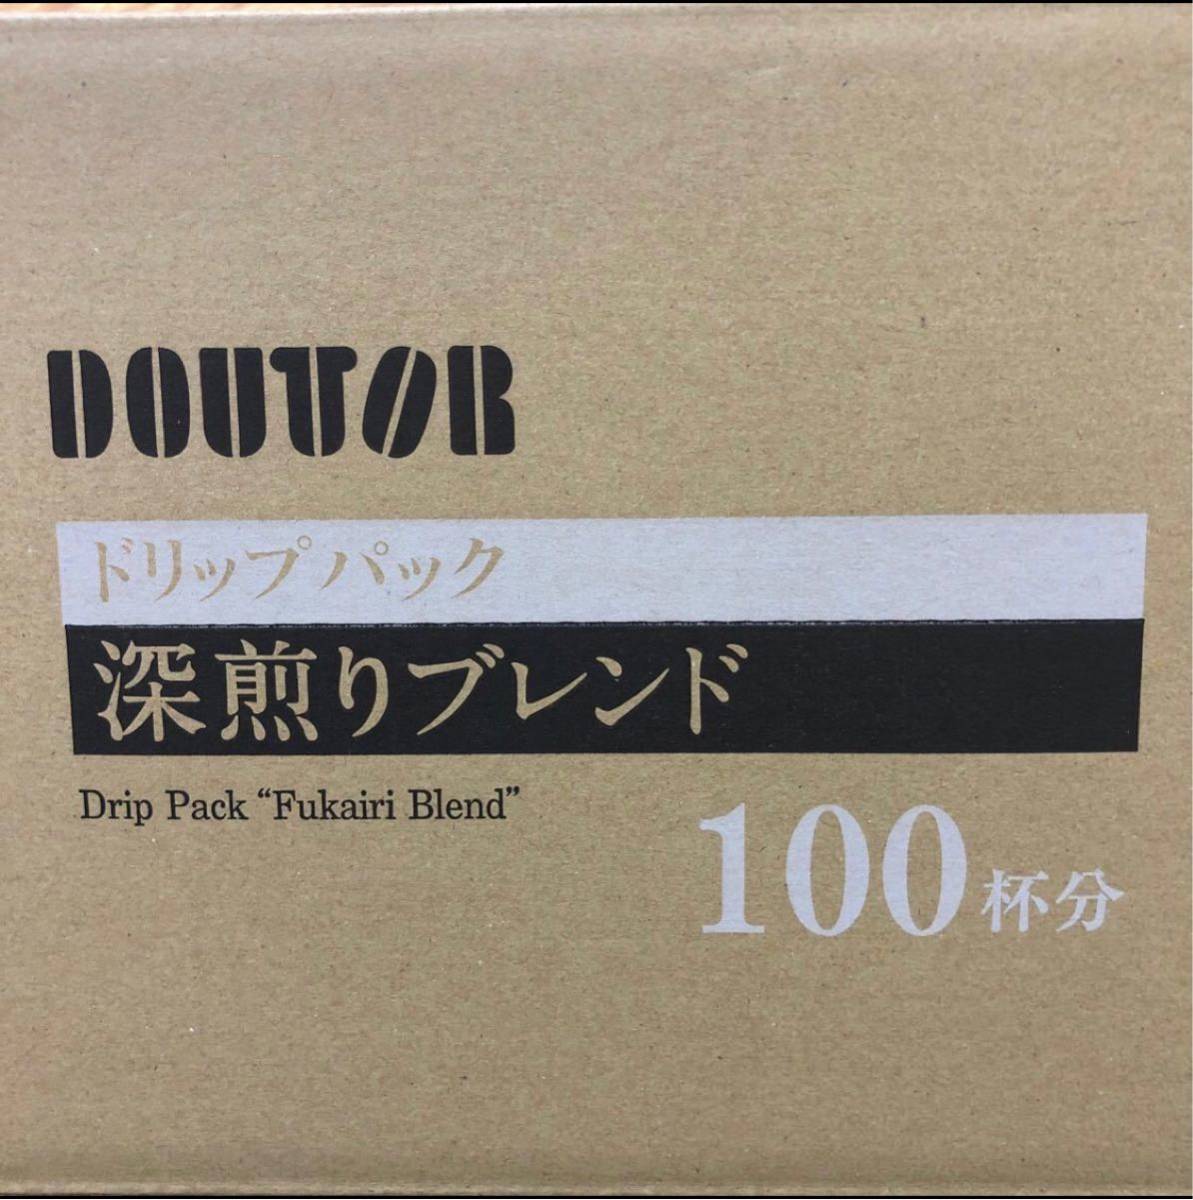 【まとめ買い】ドトールコーヒー DOUTOR 深煎りブレンド 100袋セット ドリップコーヒー